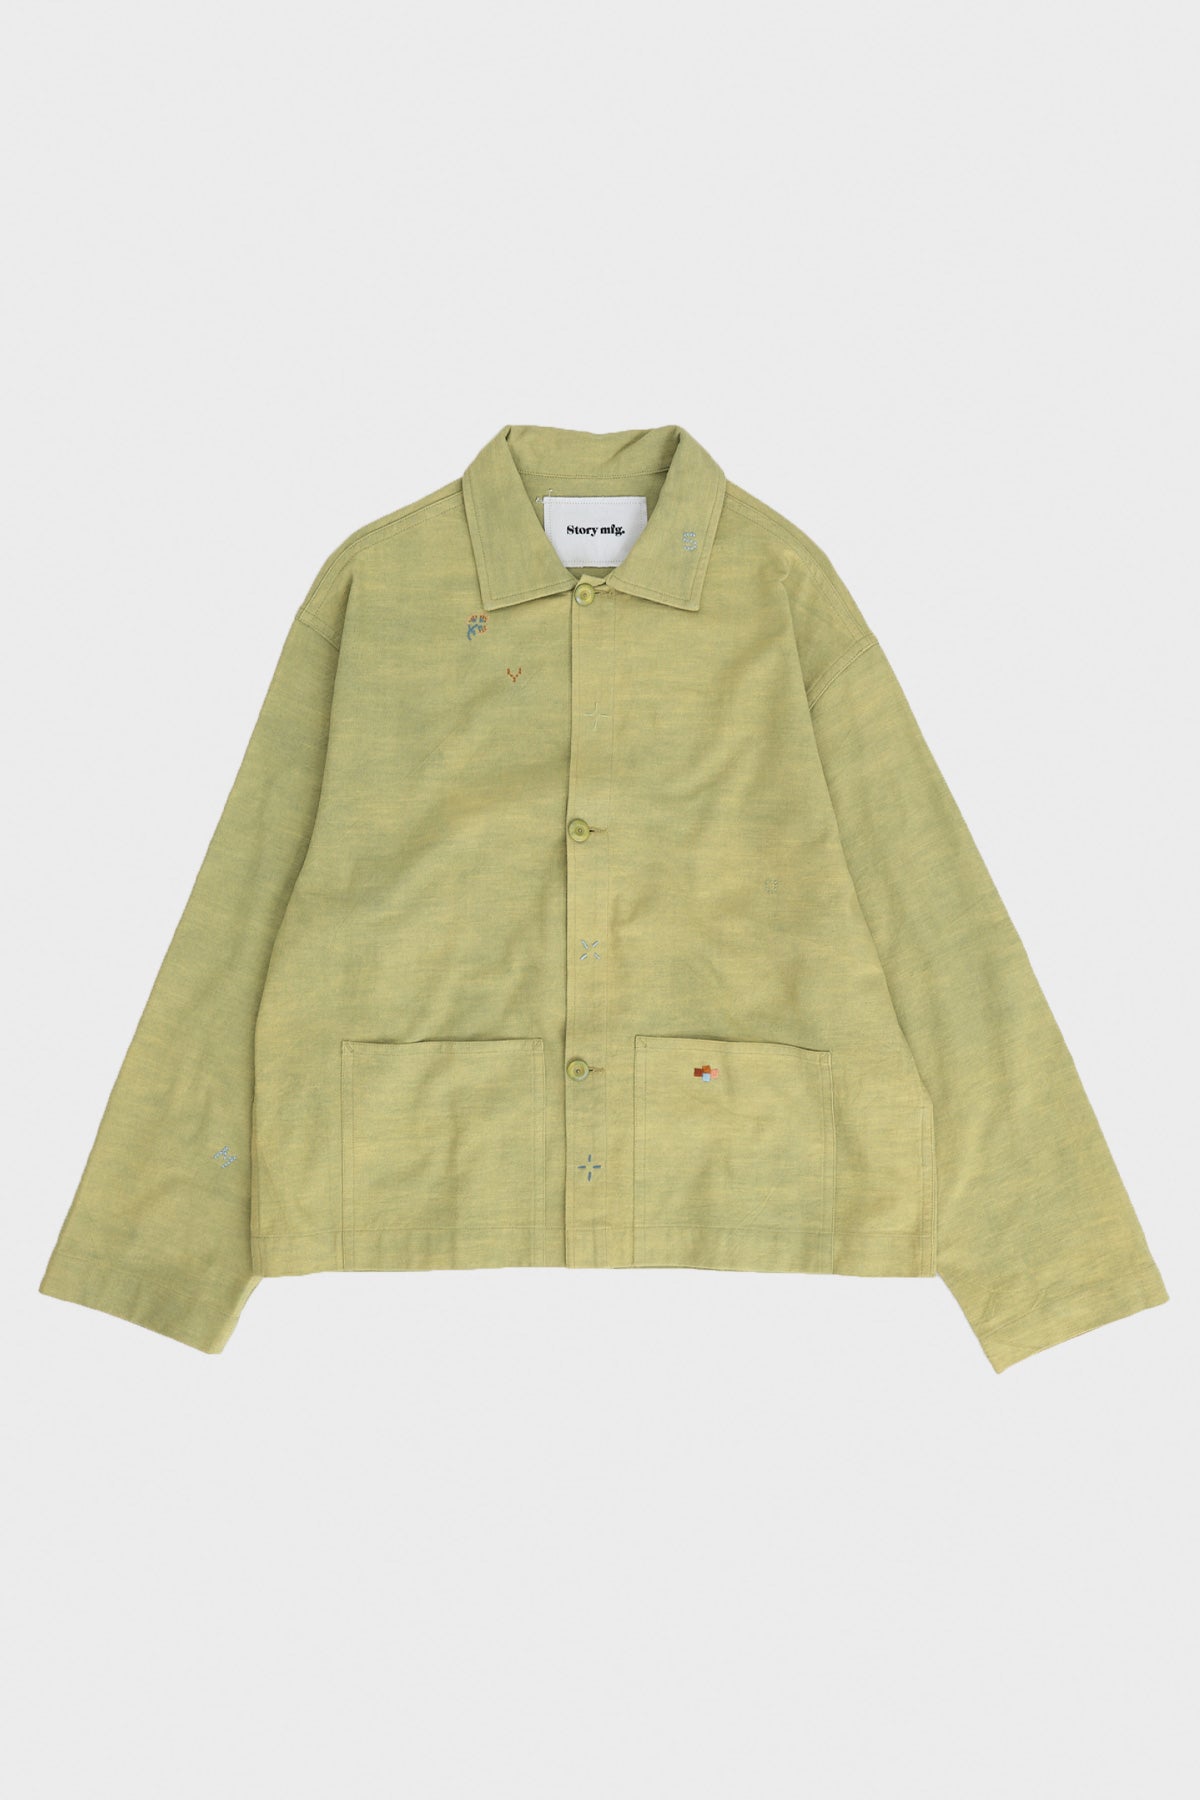 SOT Jacket - Green Sampler